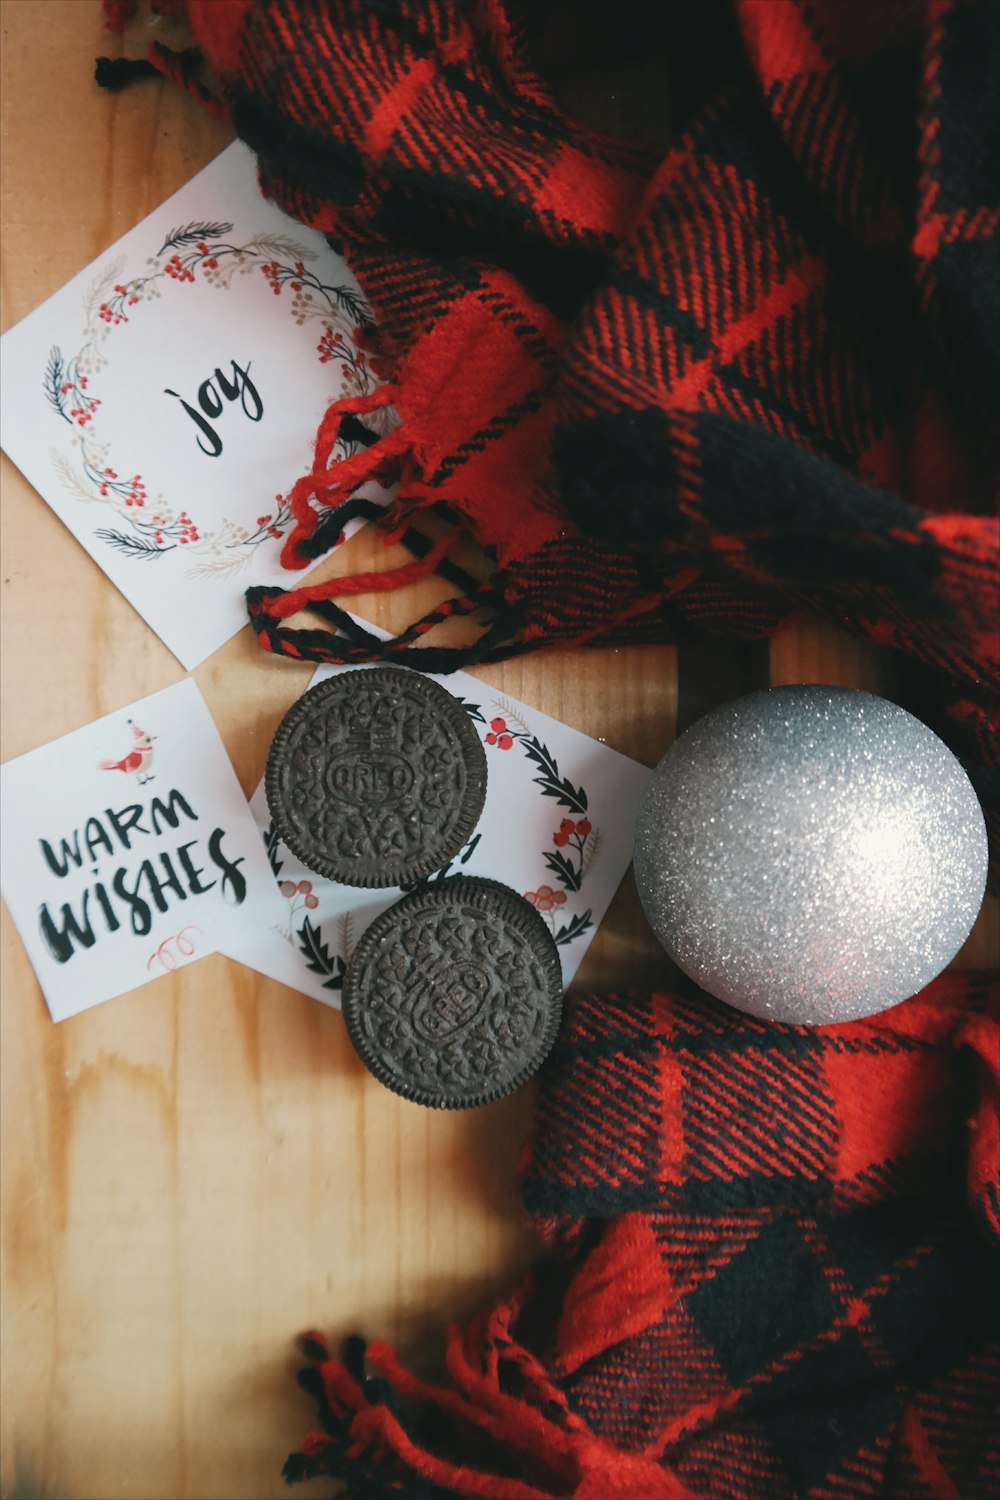 크리스마스 종이 노트 주위에 오레오 쿠키, 장식품 및 빨간색 격자 무늬 직물.